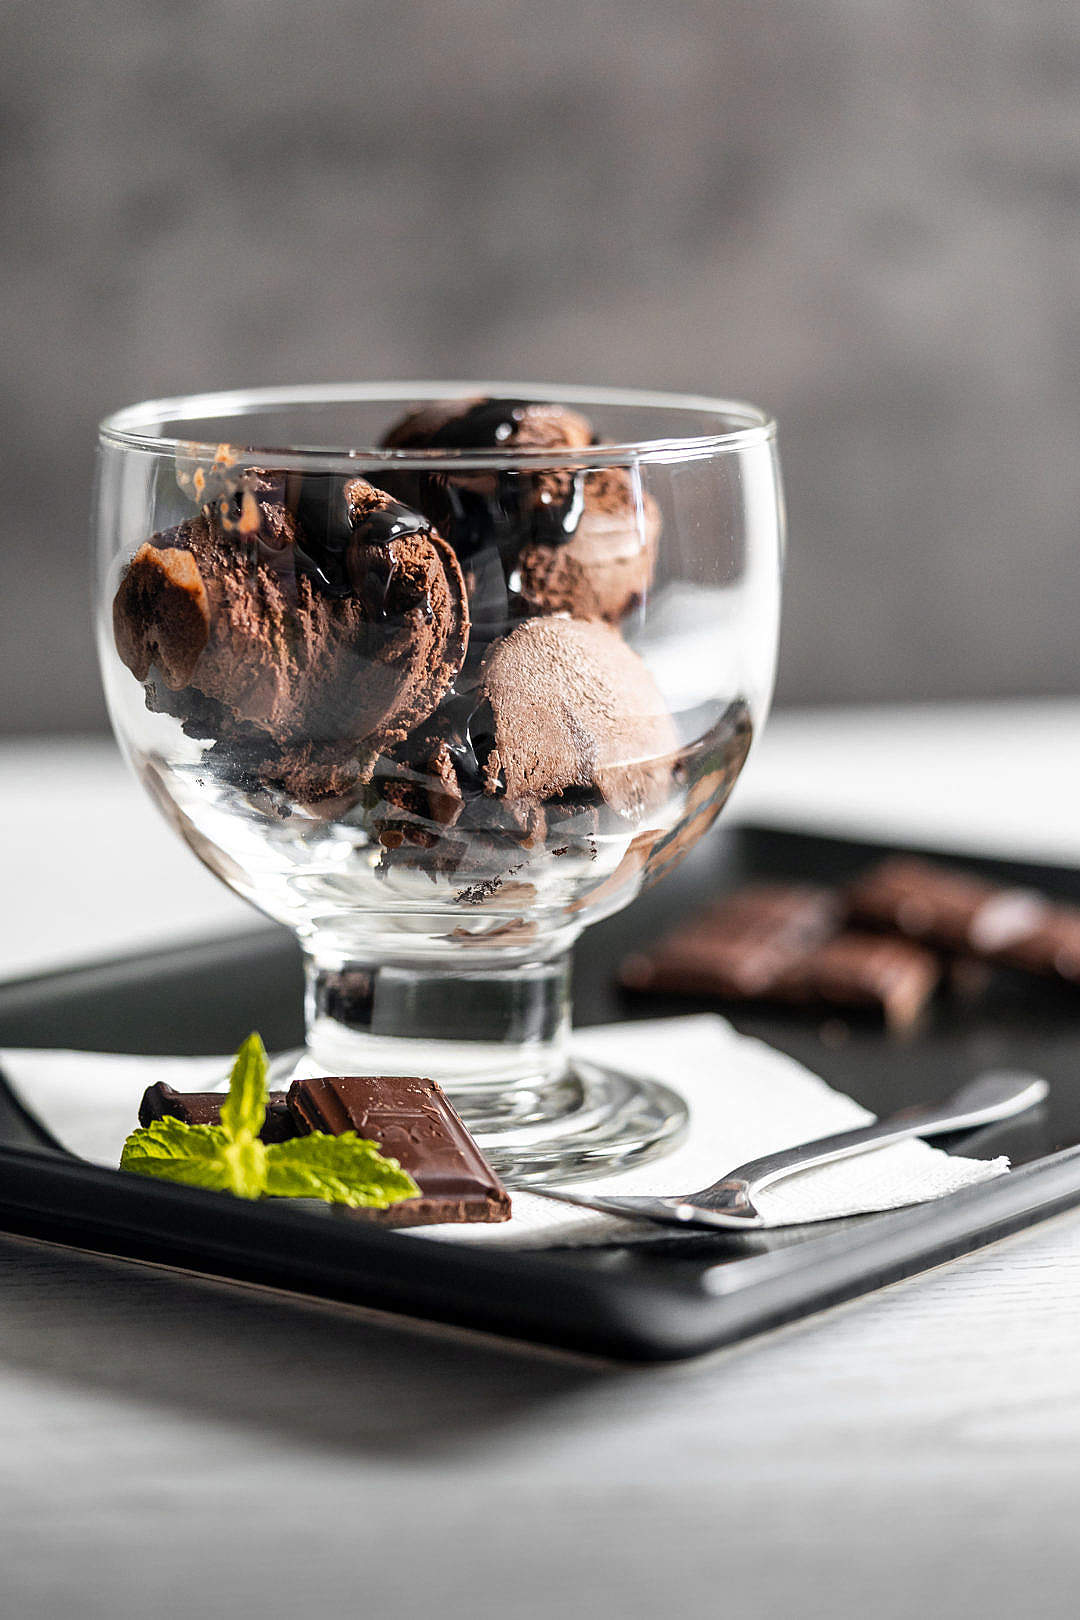 Download Chocolate Ice-cream Sundae FREE Stock Photo